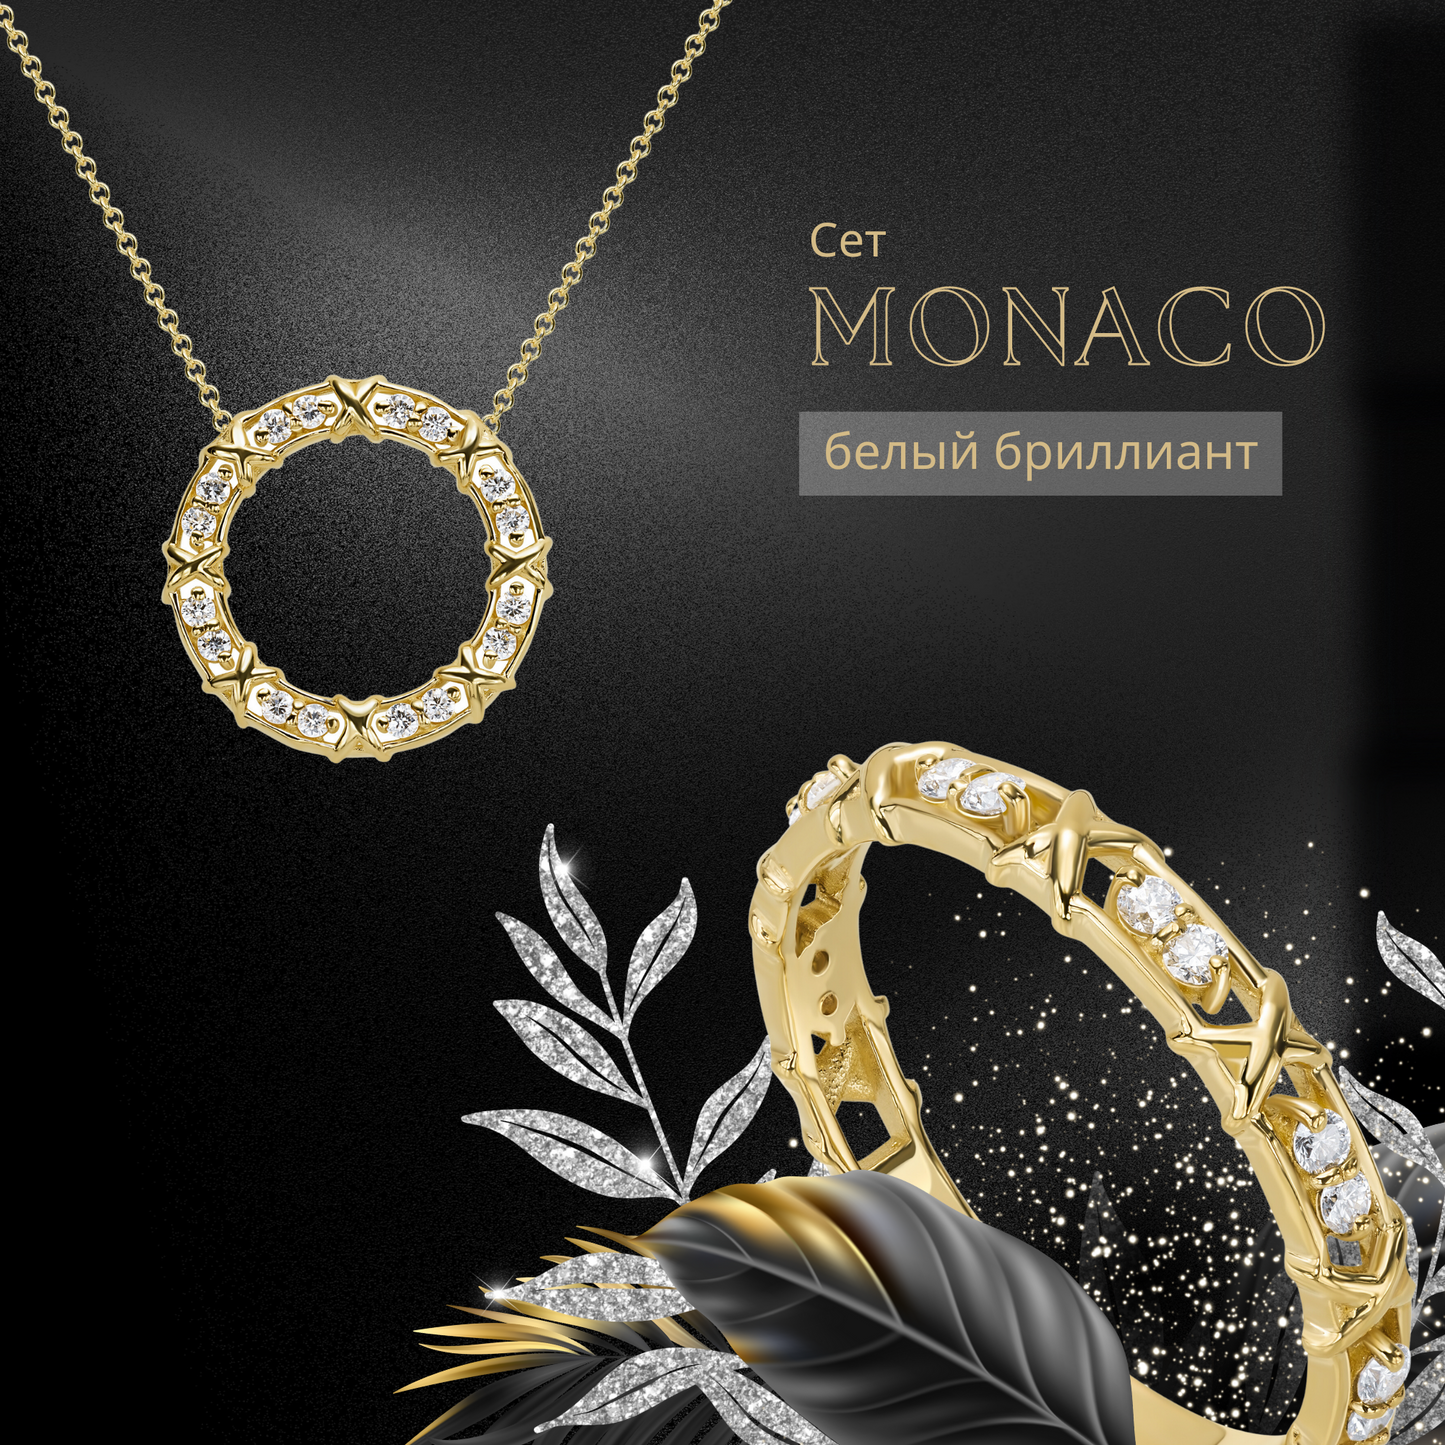 Сет "MONACO" - кулон с цепочкой и кольцо - 14 каратное золото и бриллианты